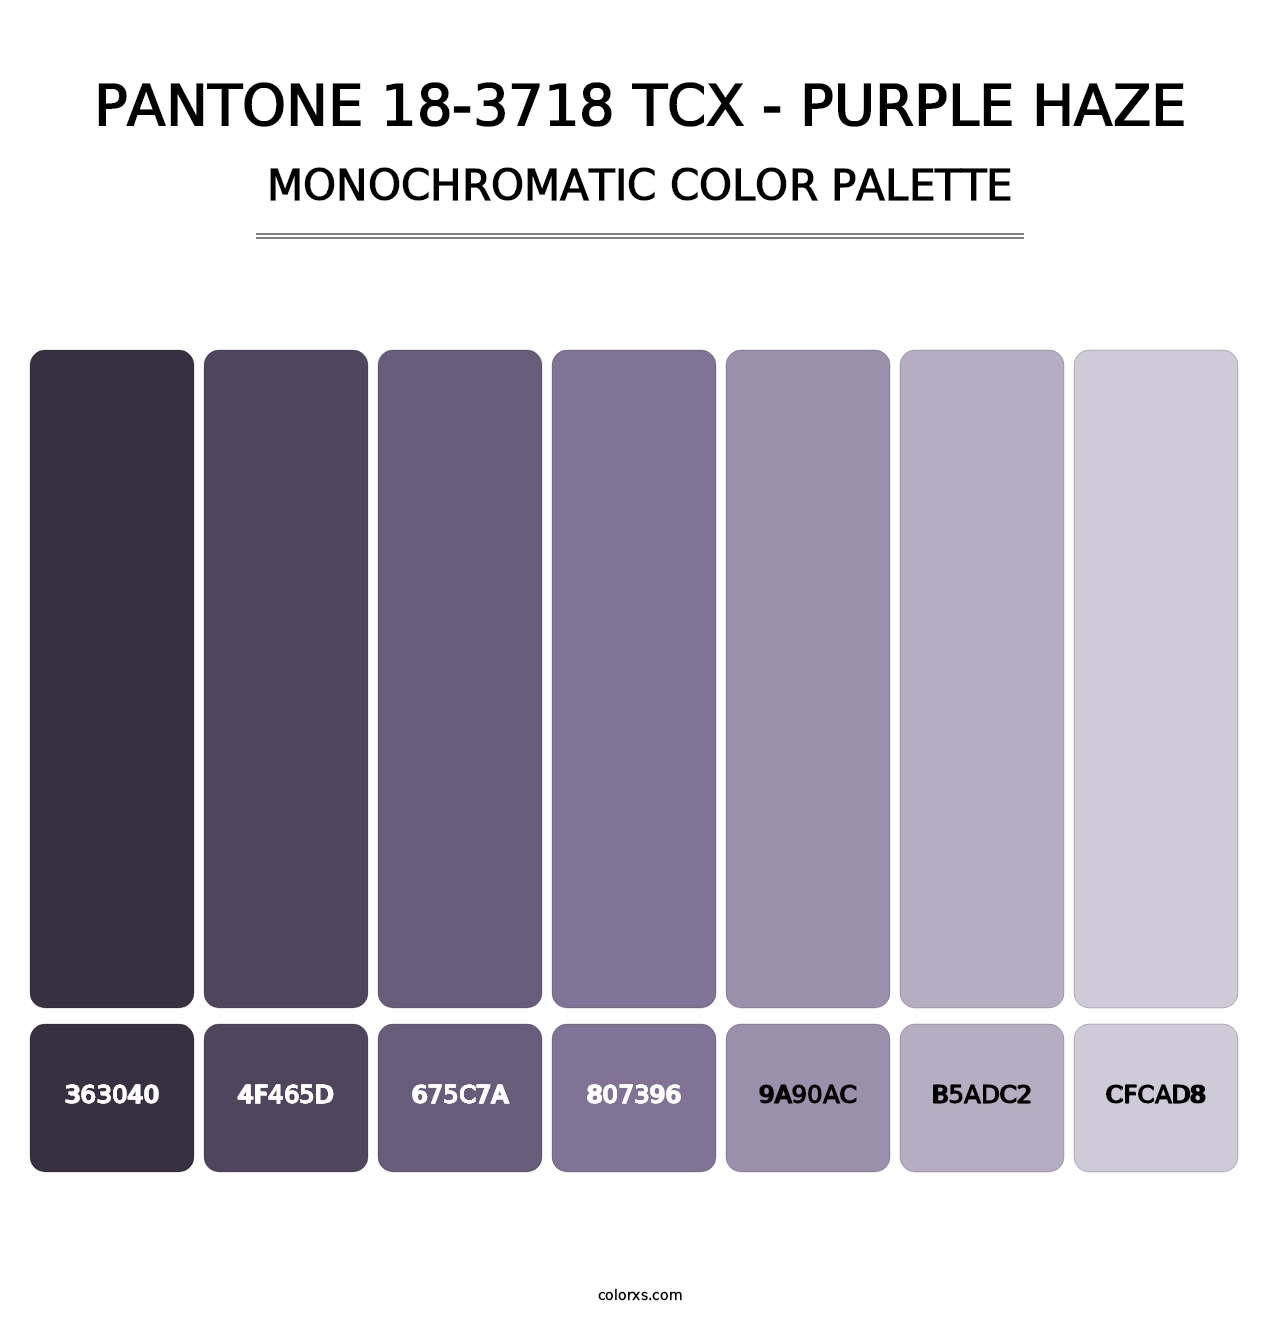 PANTONE 18-3718 TCX - Purple Haze - Monochromatic Color Palette